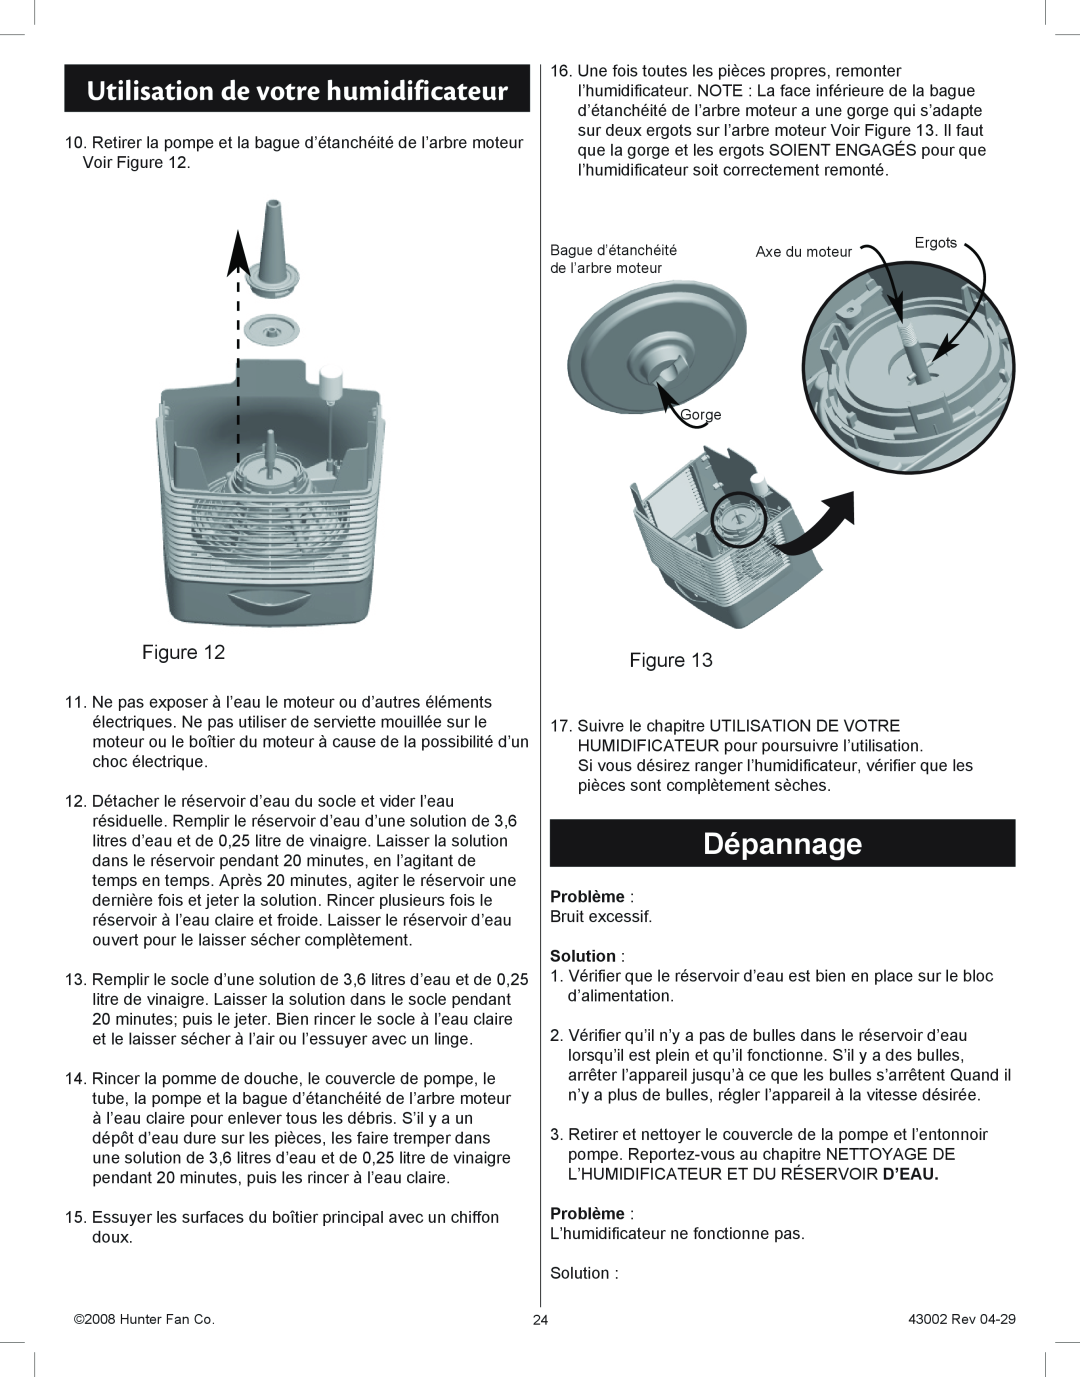 Hunter Fan 37407 manual Dépannage, Utilisation de votre humidificateur, Problème, Solution 